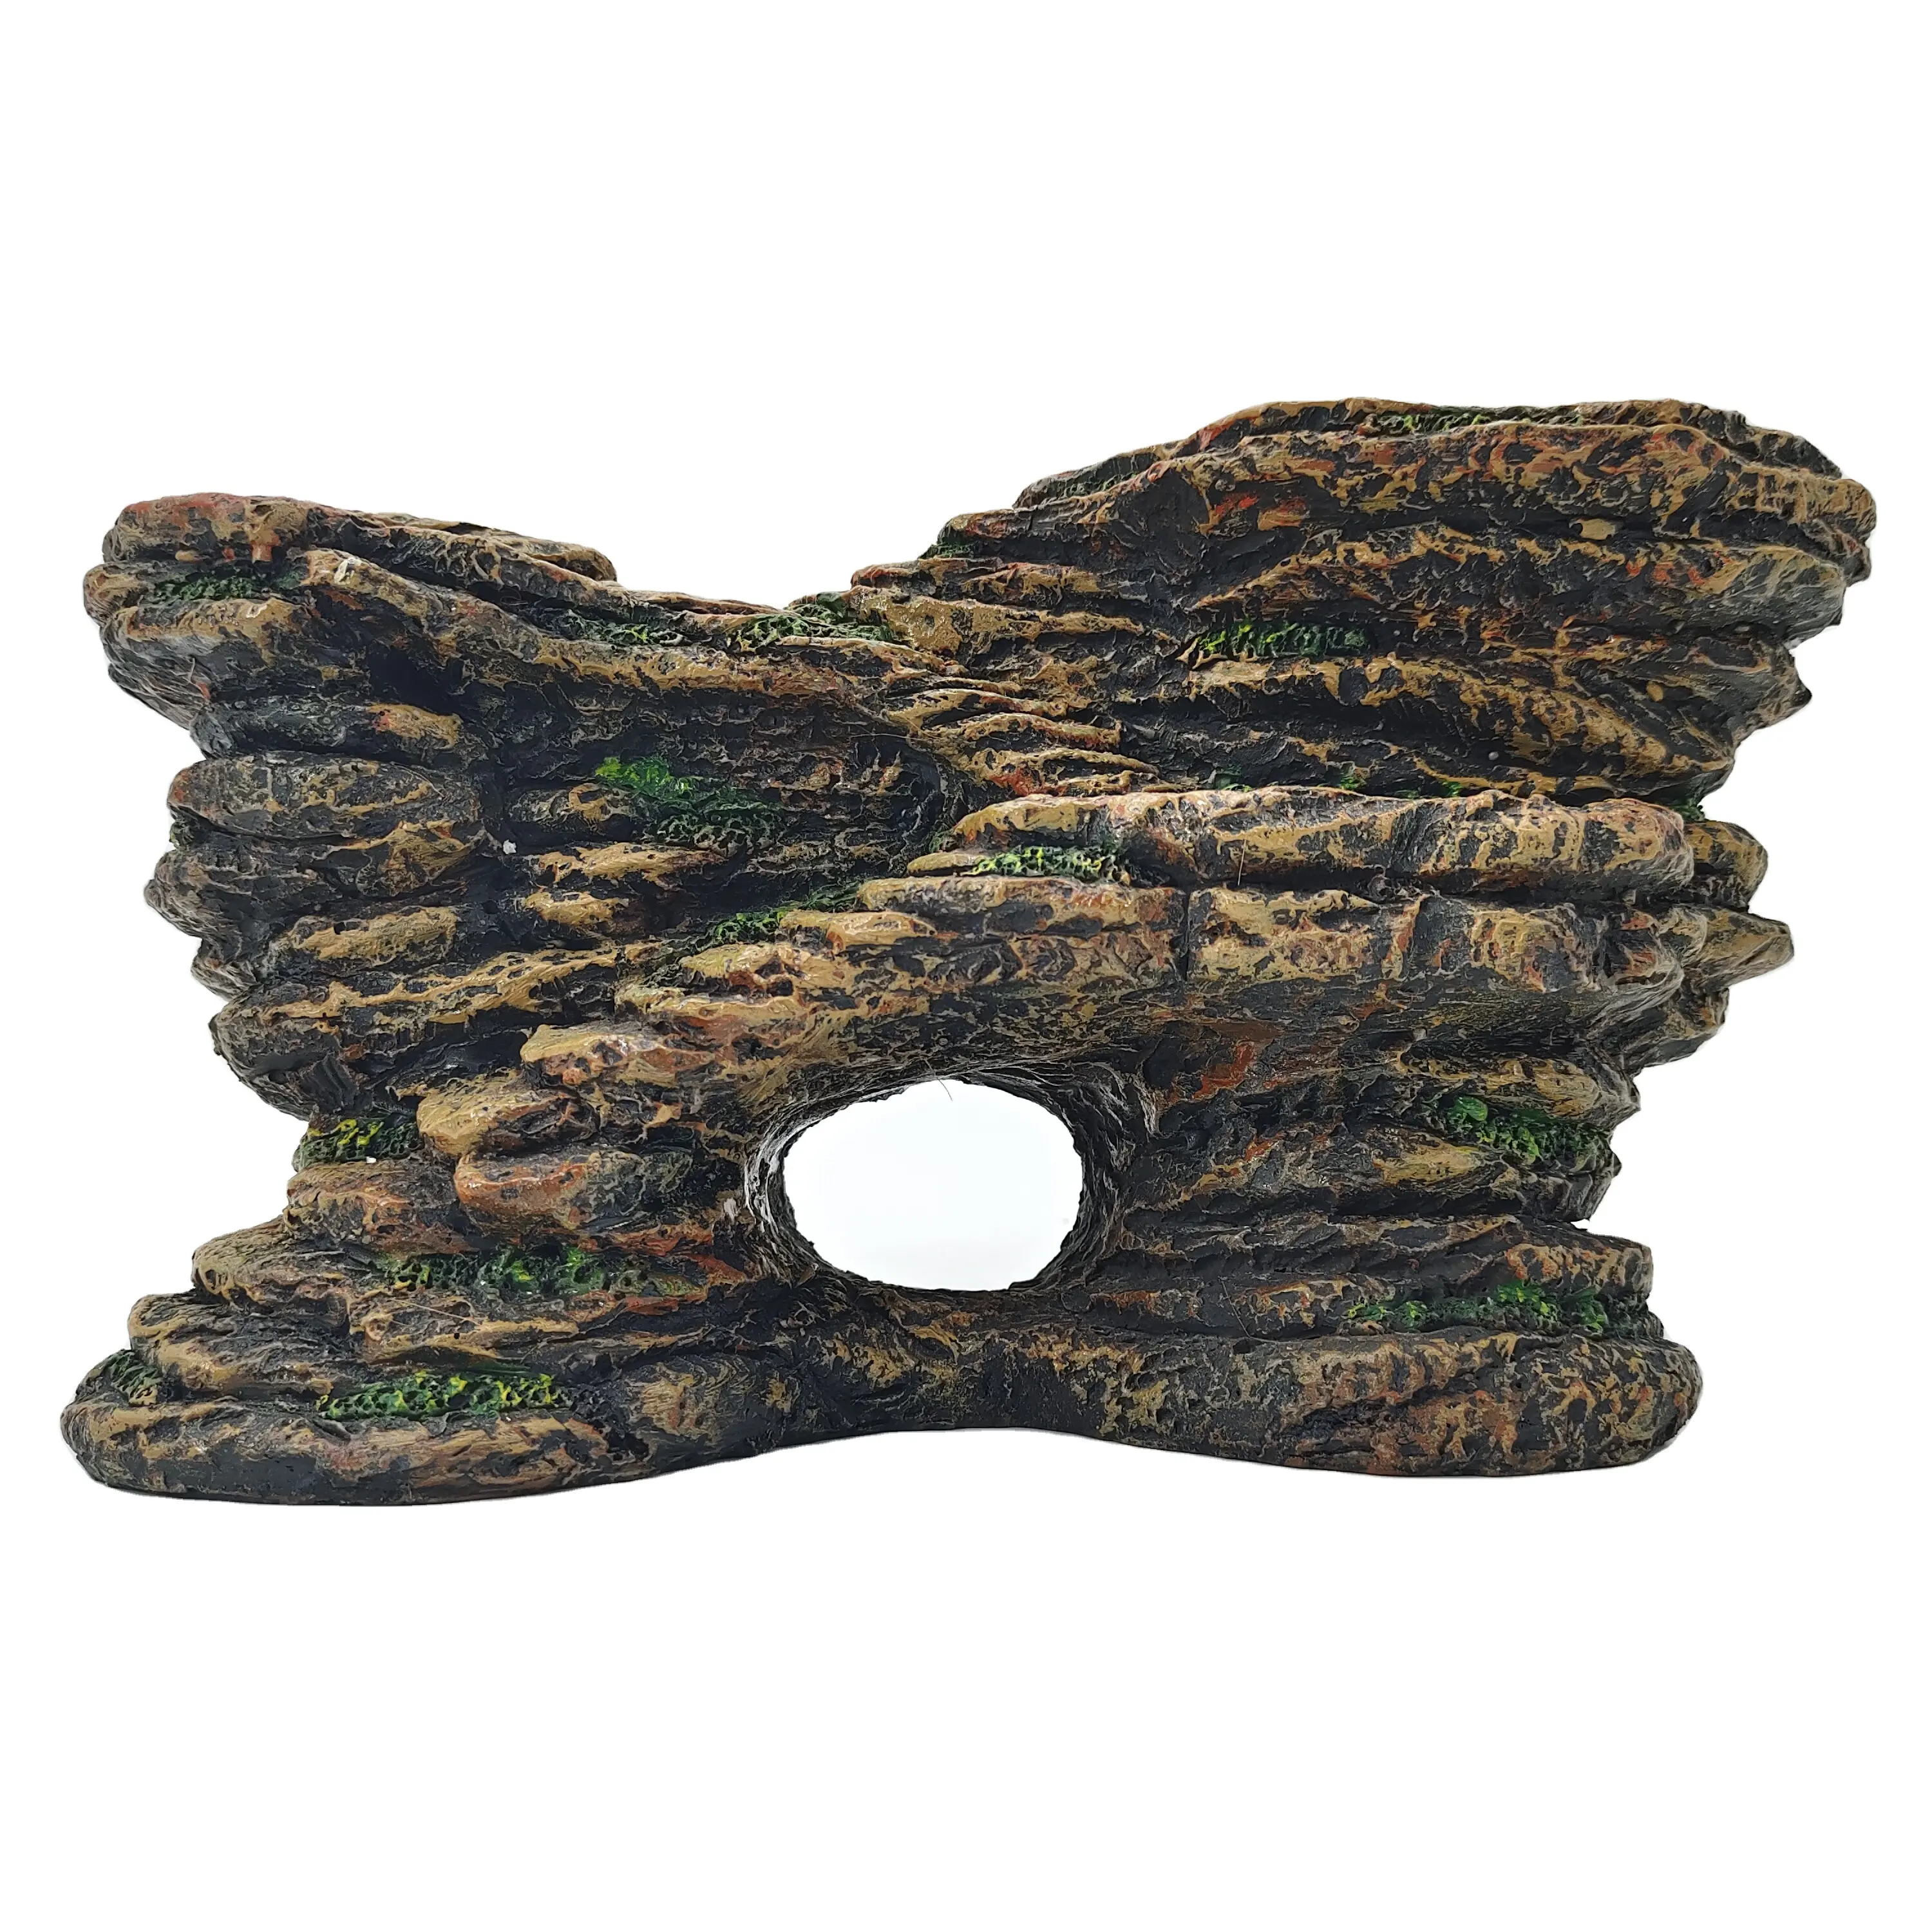 Ornamen reptil akuarium penyu rumah gua tangki ikan Resin dekorasi rumah Model Eropa hewan Model kotak ikan palsu 1400 G